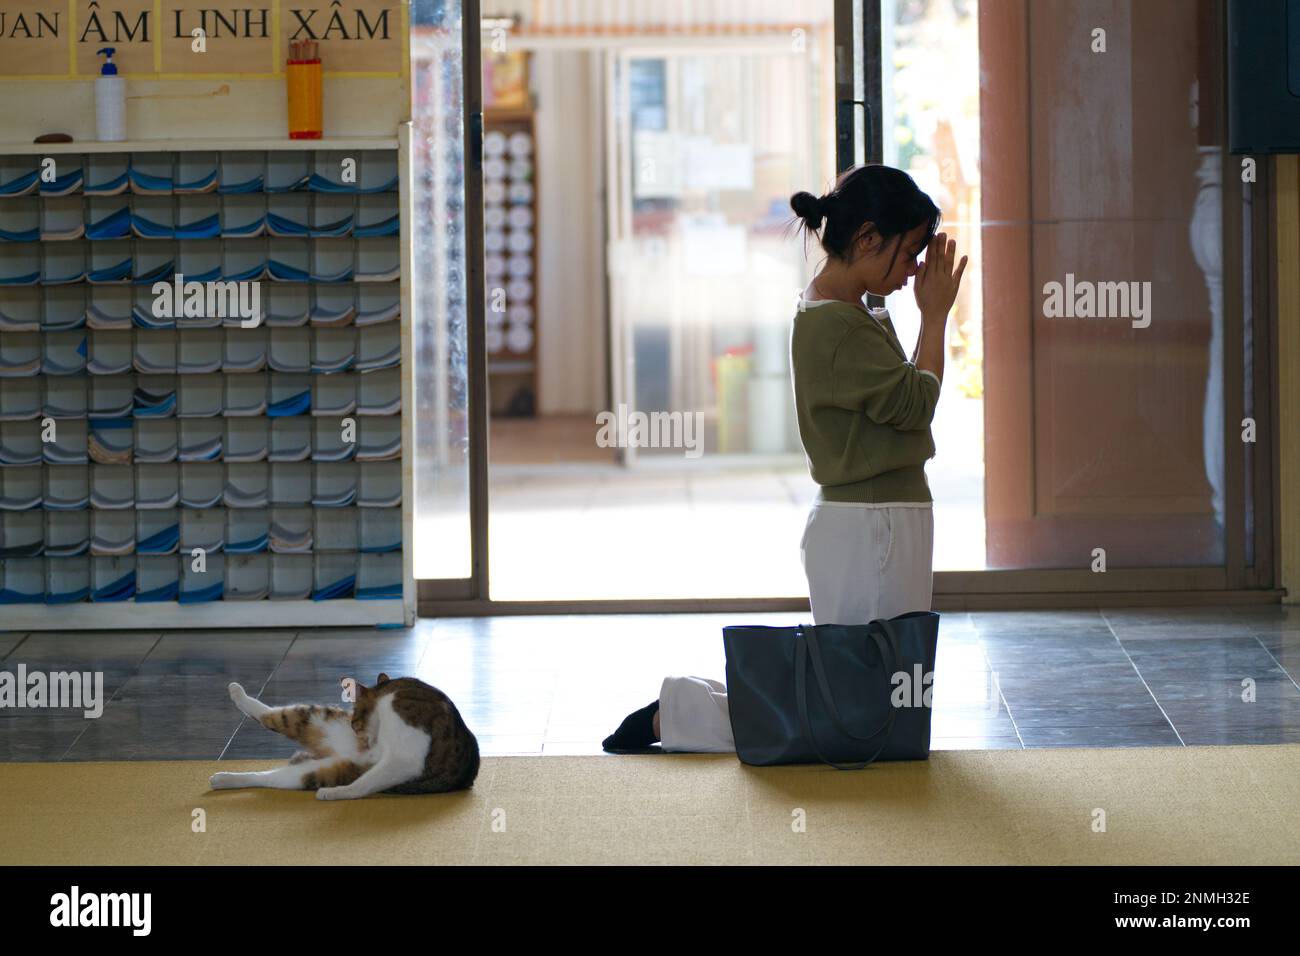 Eine Frau, die betet und sich bedankt, während eine Katze sich im vietnamesischen buddhistischen Tempel Quang Minh, Braybrook, Melbourne, Australien, entspannt. Stockfoto